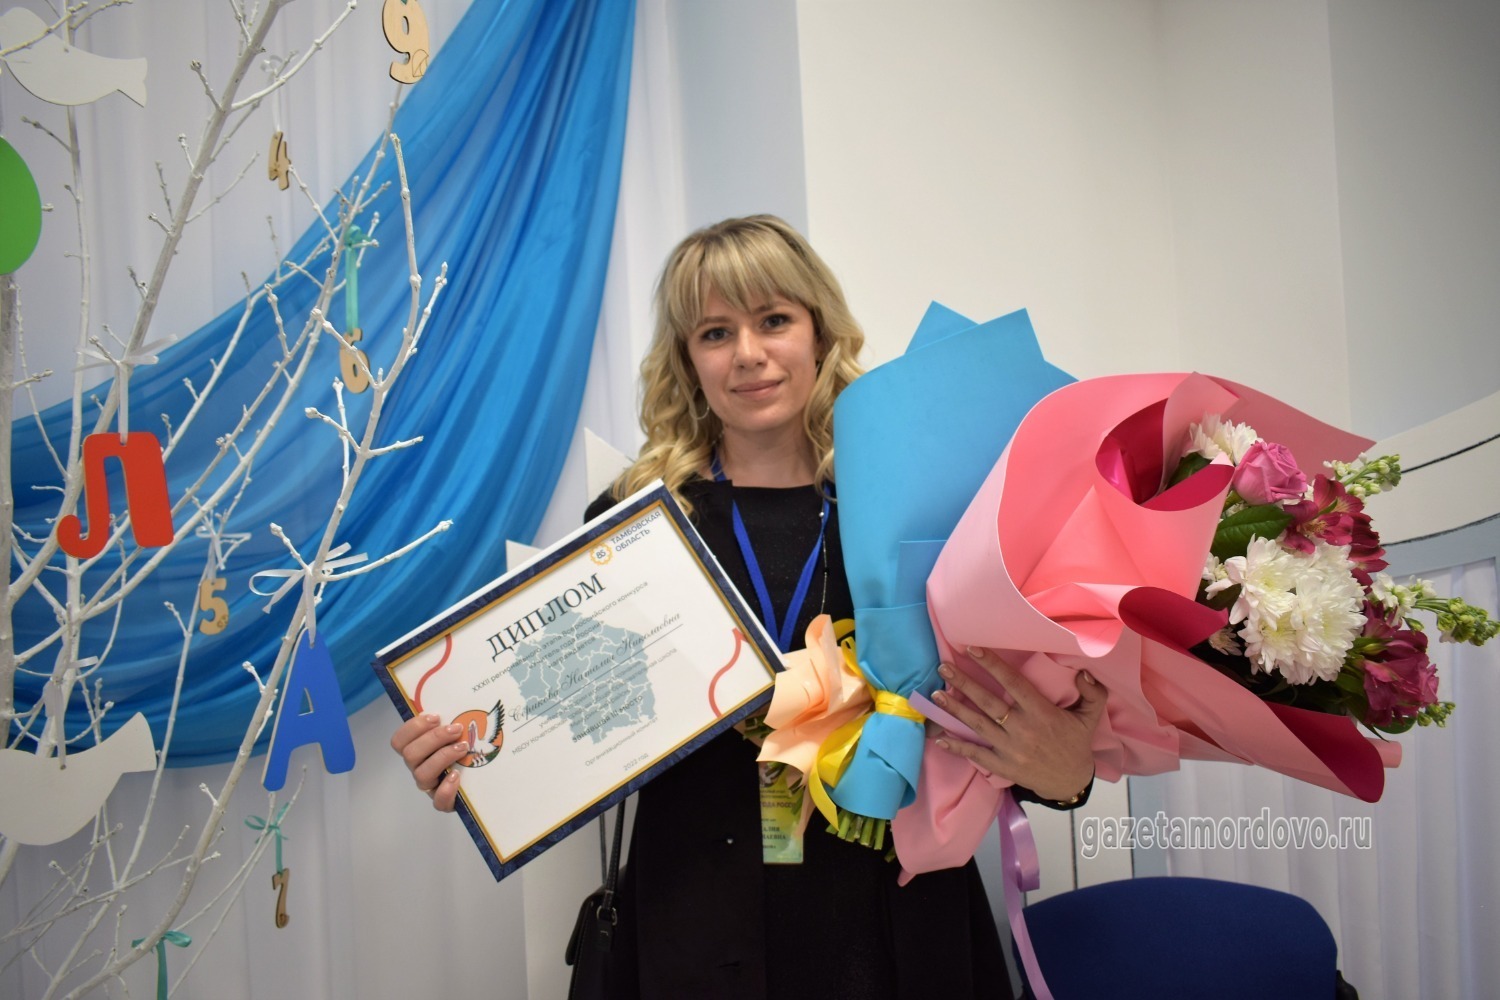 Бронзовый призёр регионального этапа конкурса из Мичуринского района Наталия Серикова